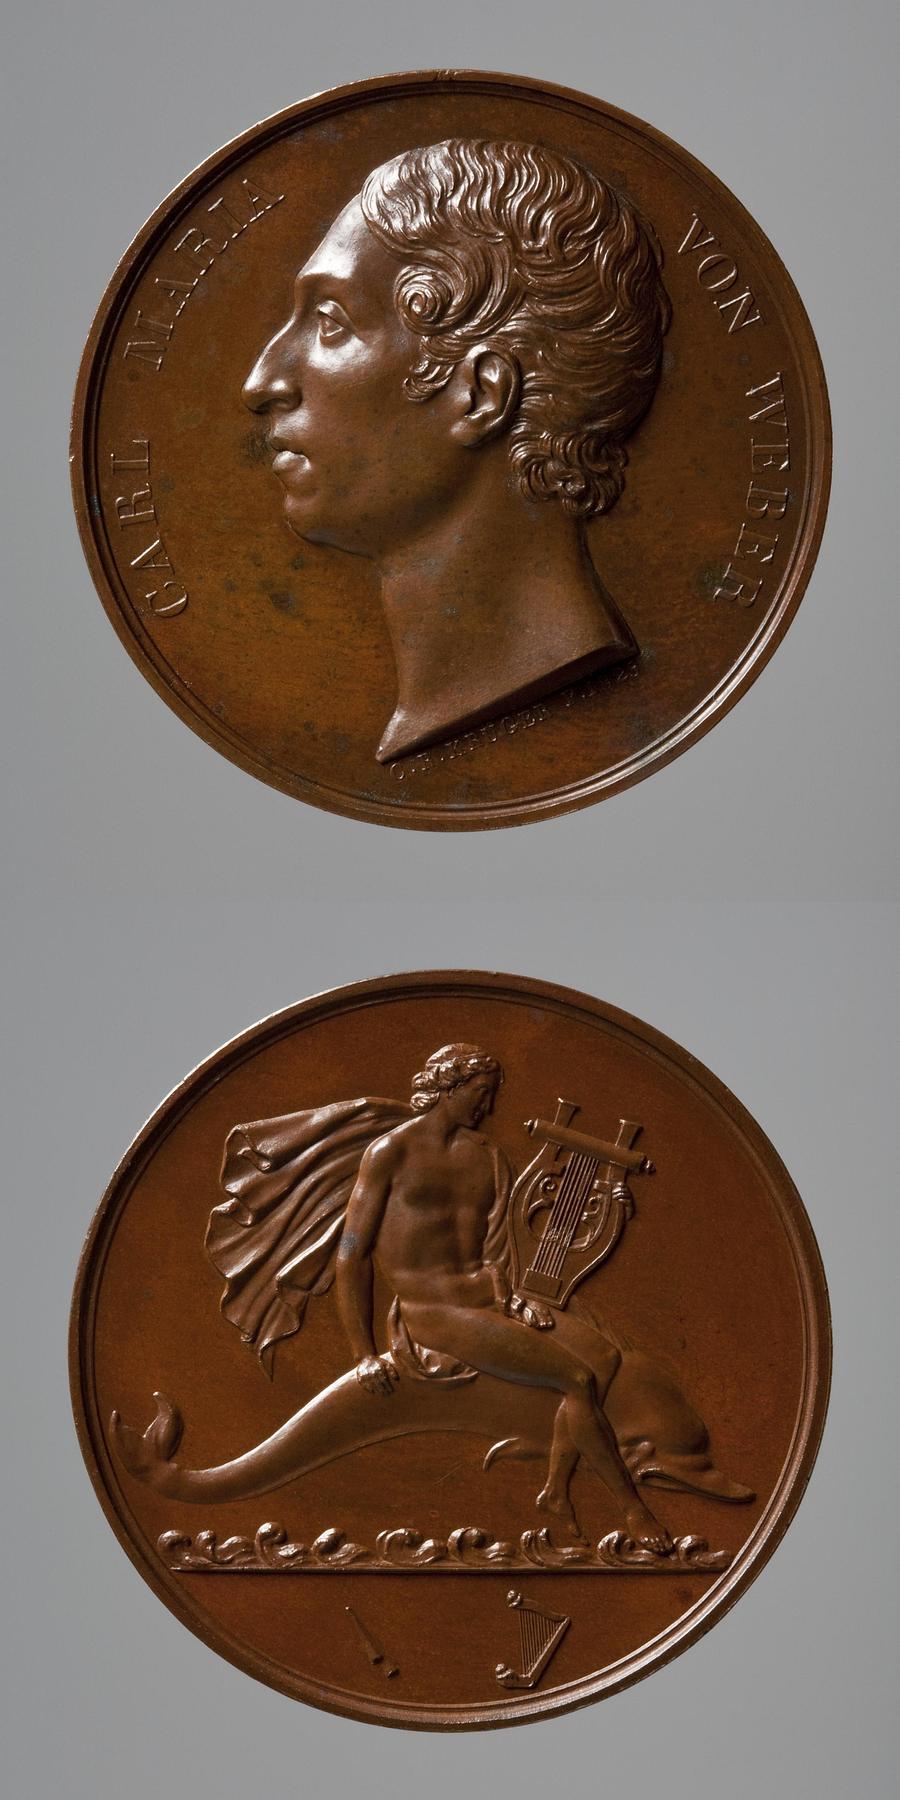 Medaljens forside: Carl Maria von Weber. Medaljens bagside: Arion på delfinen, F99